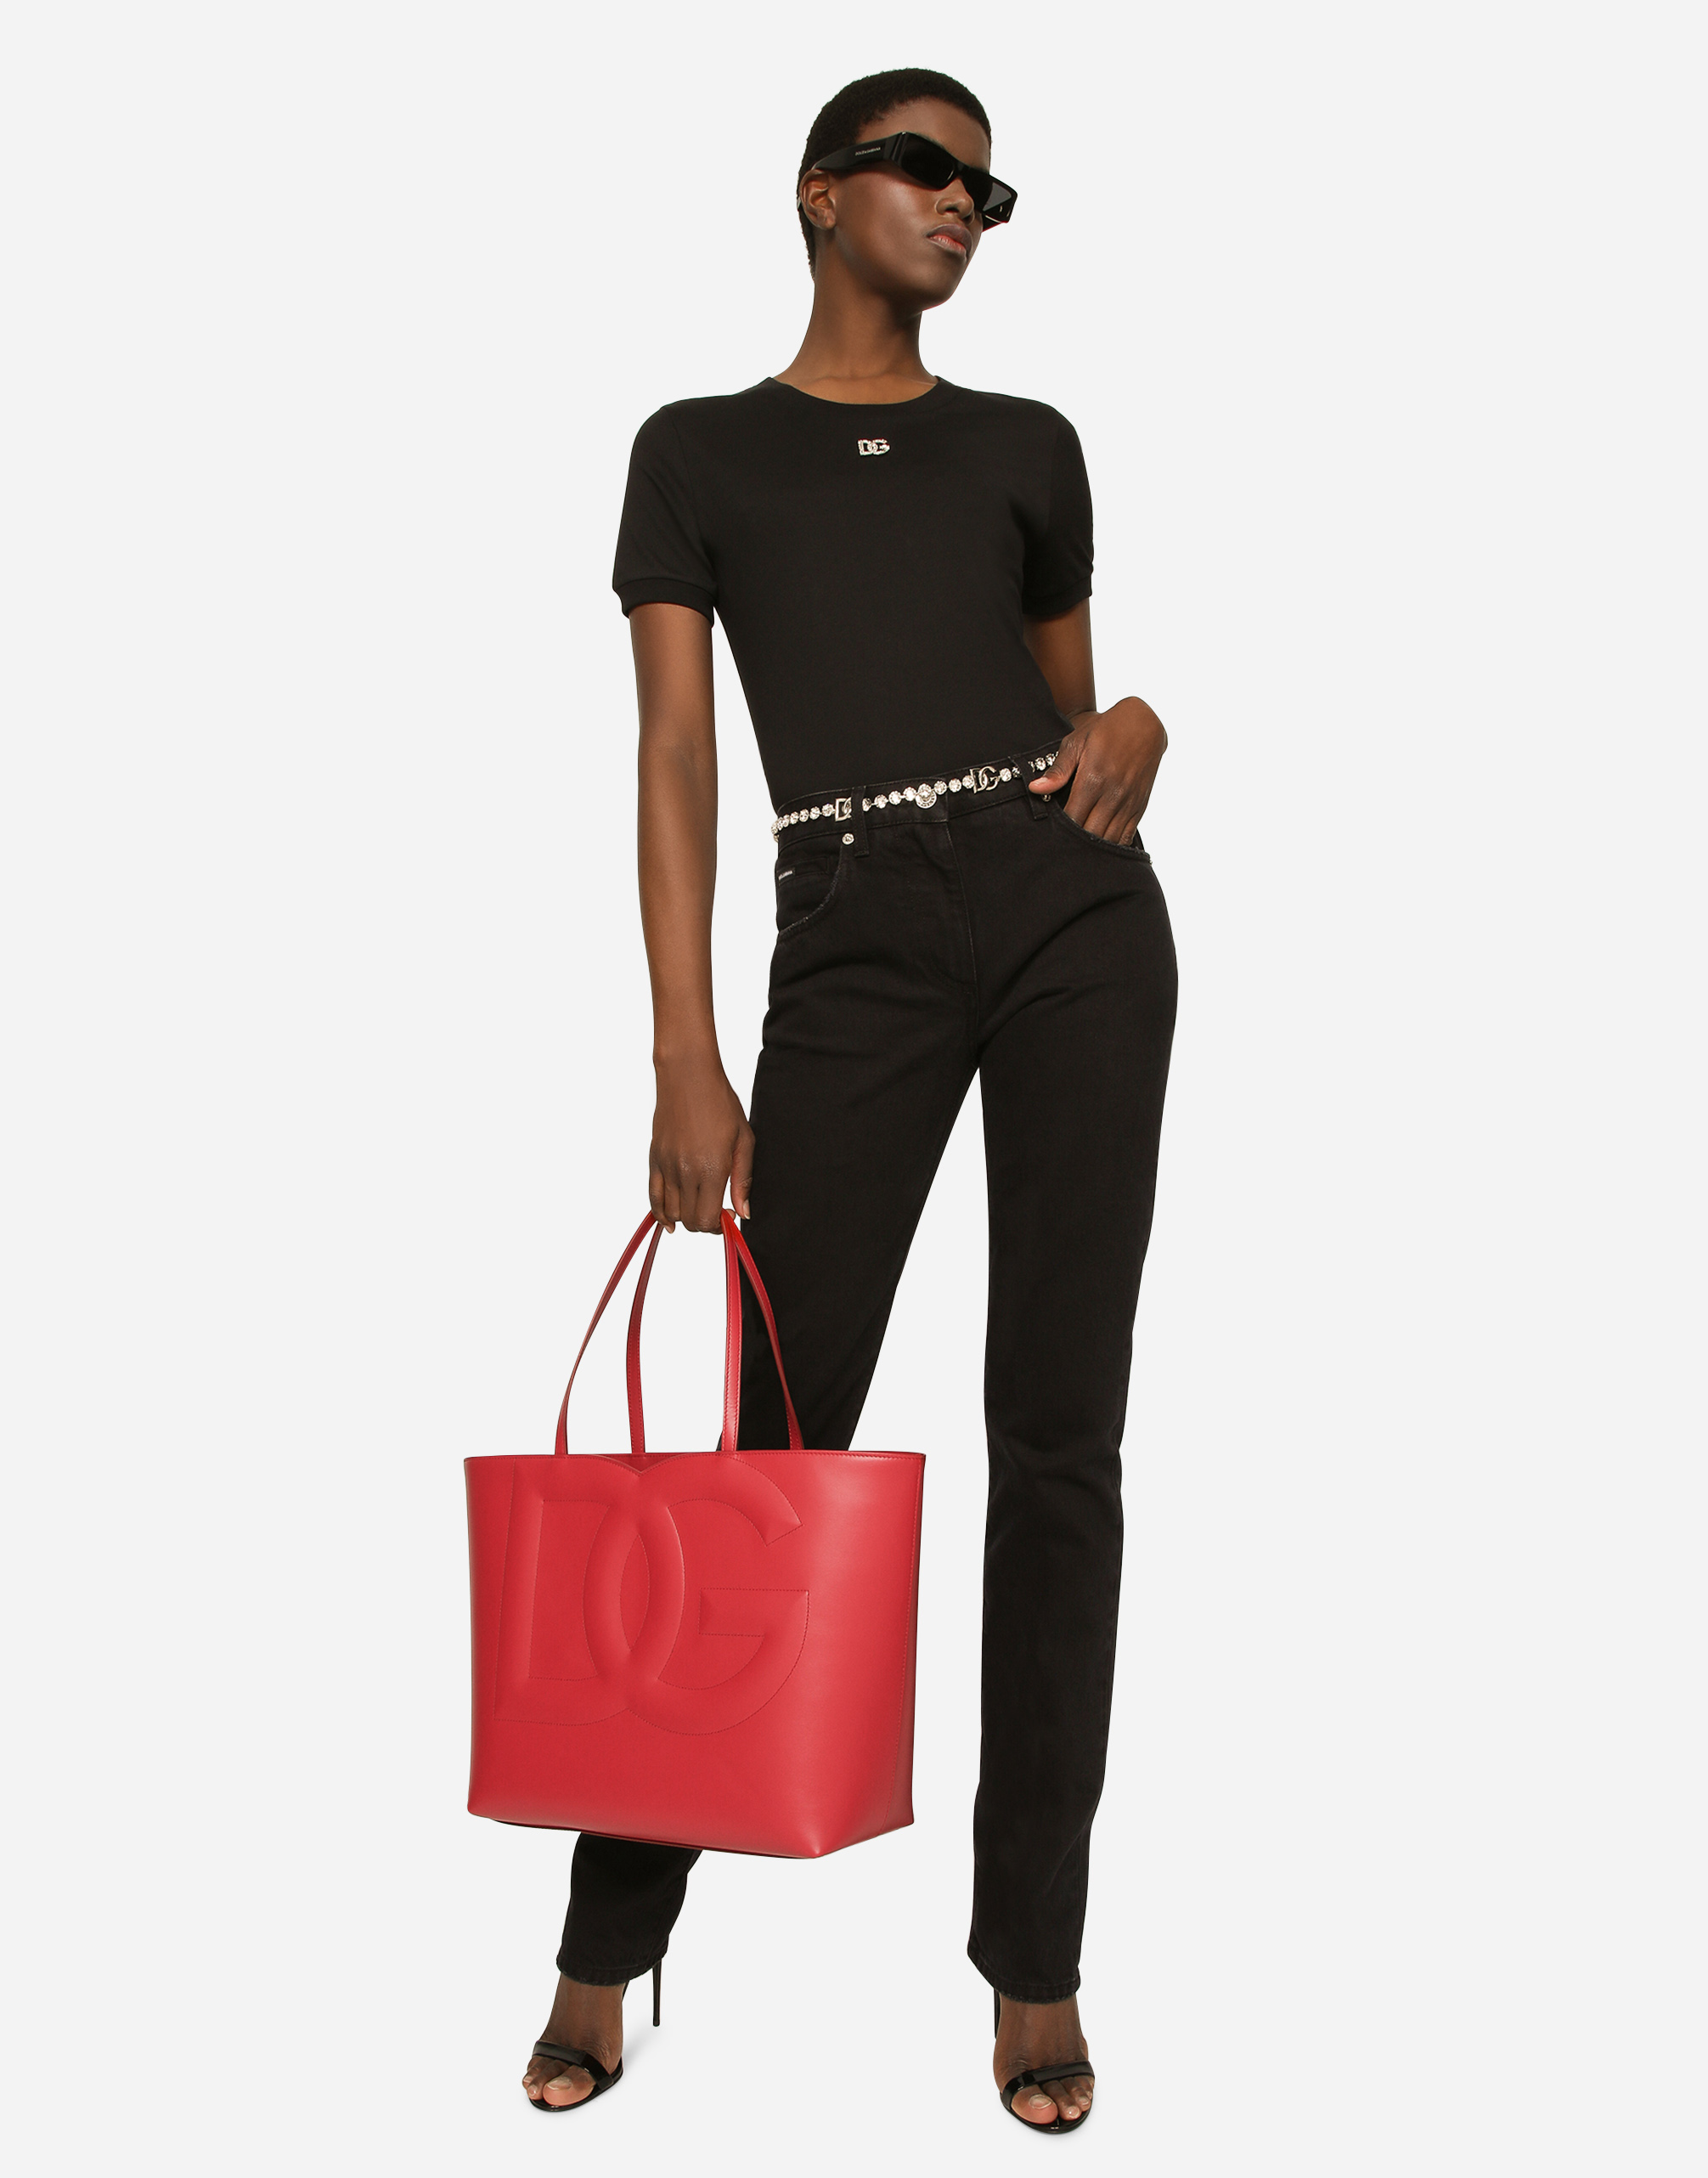 Medium DG Logo shopper in Red for Women | Dolce&Gabbana®